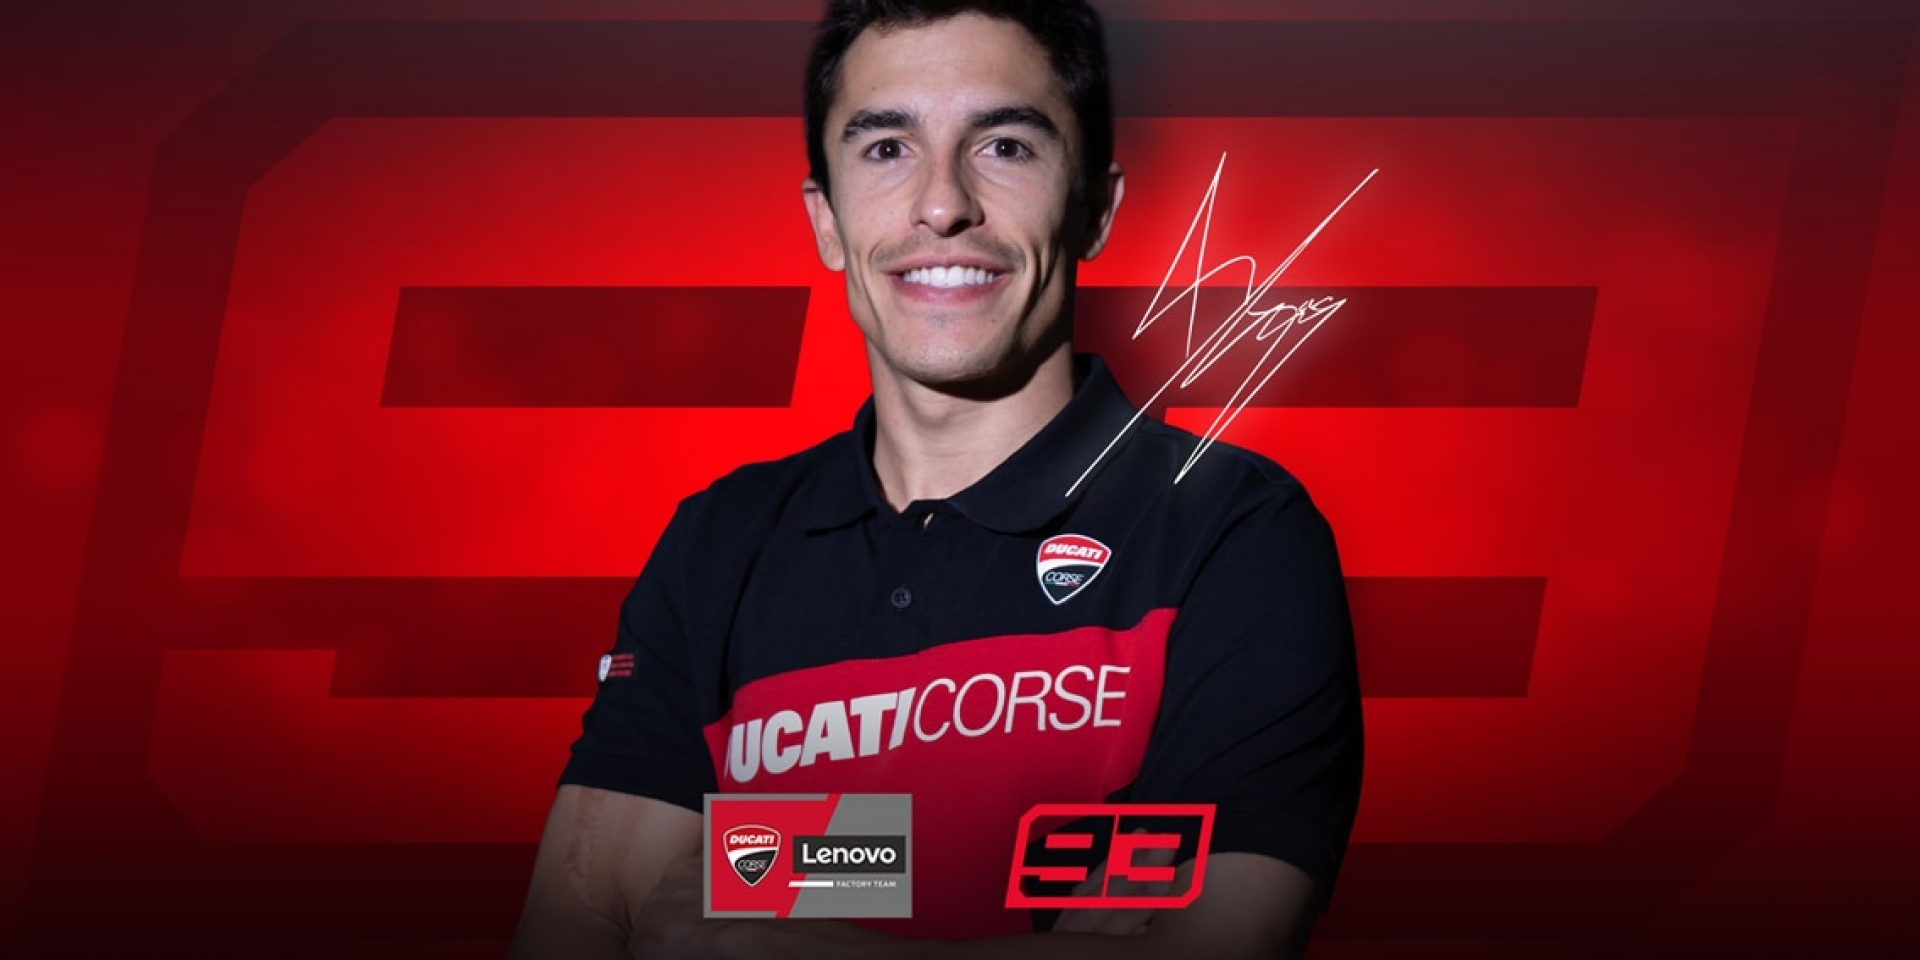 王者登場！Marc Márquez 加盟 Ducati MotoGP廠隊 與 Francesco Bagnaia 組成超強雙人組